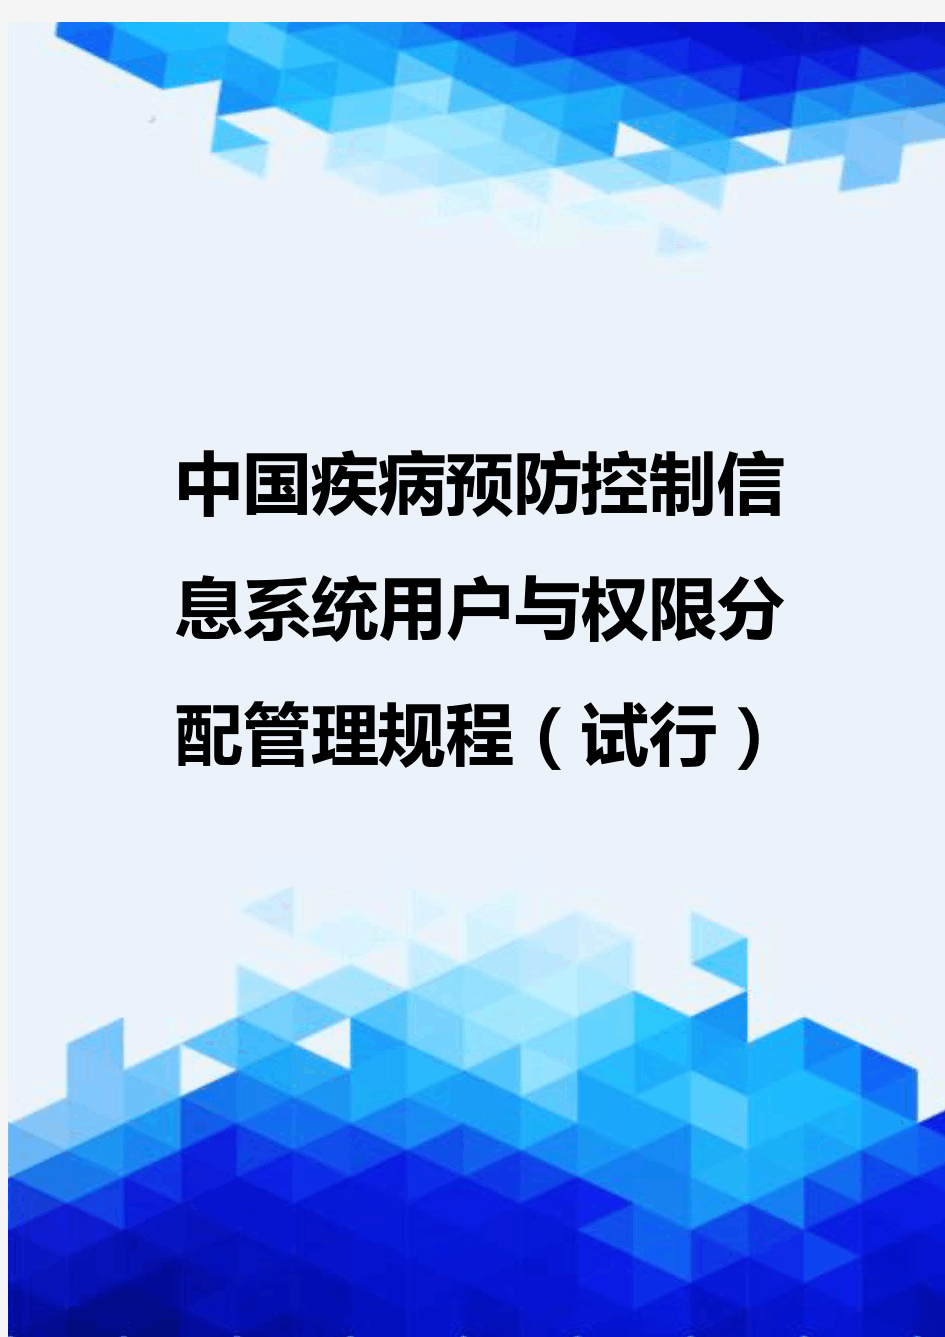 {推荐}中国疾病预防控制信息系统用户与权限分配管理规程(试行)